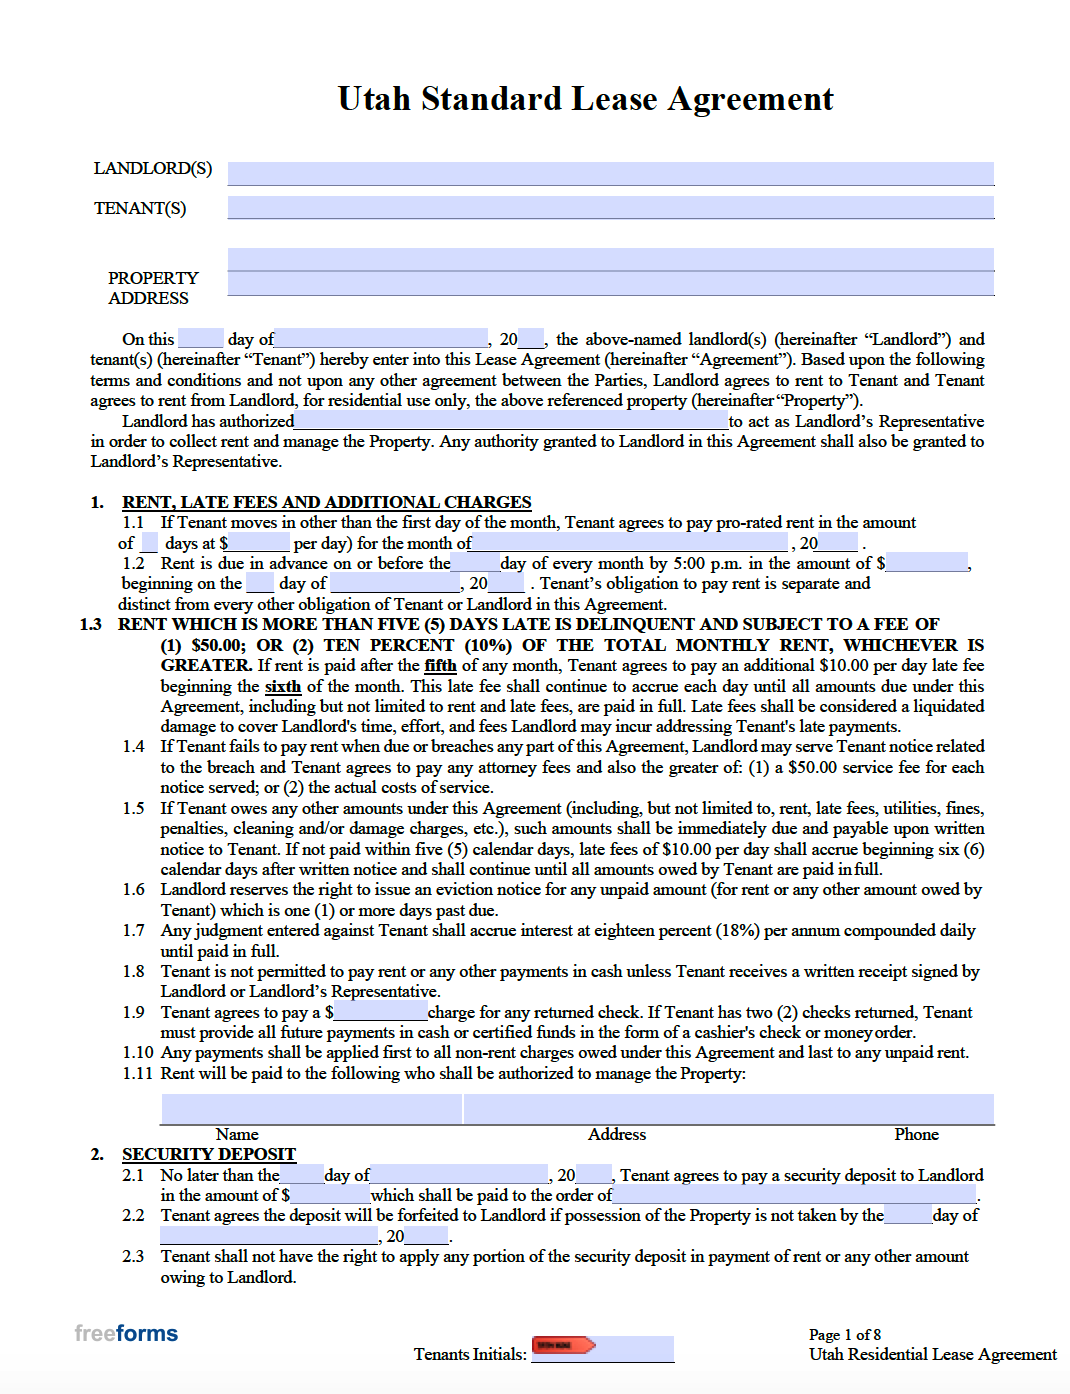 free-utah-standard-residential-lease-agreement-template-pdf-word